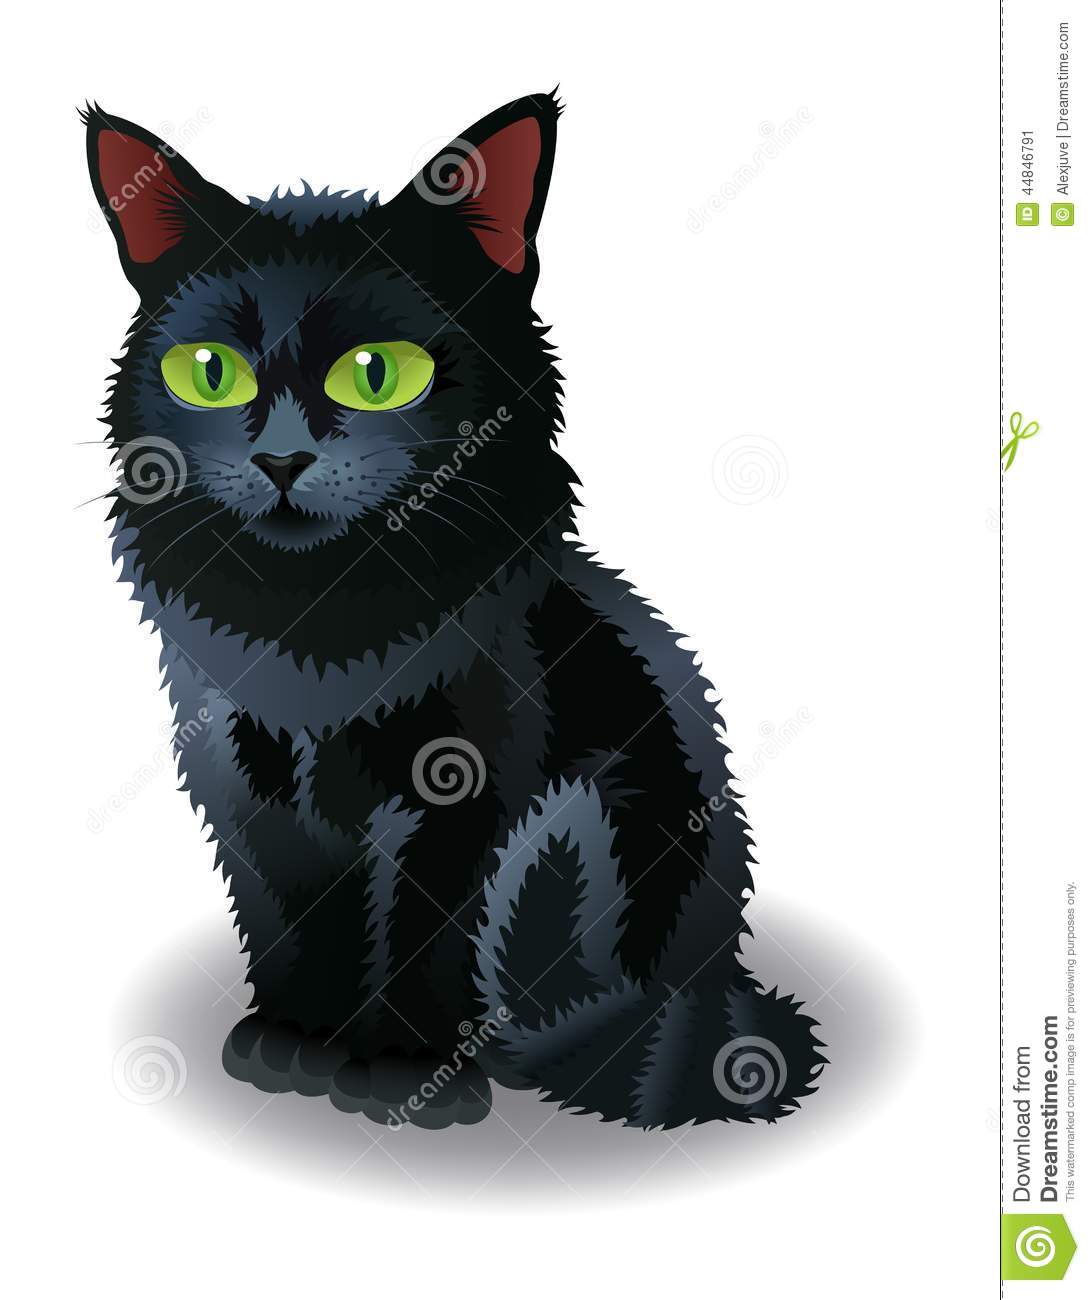 10 Halloween Cat Vector Images